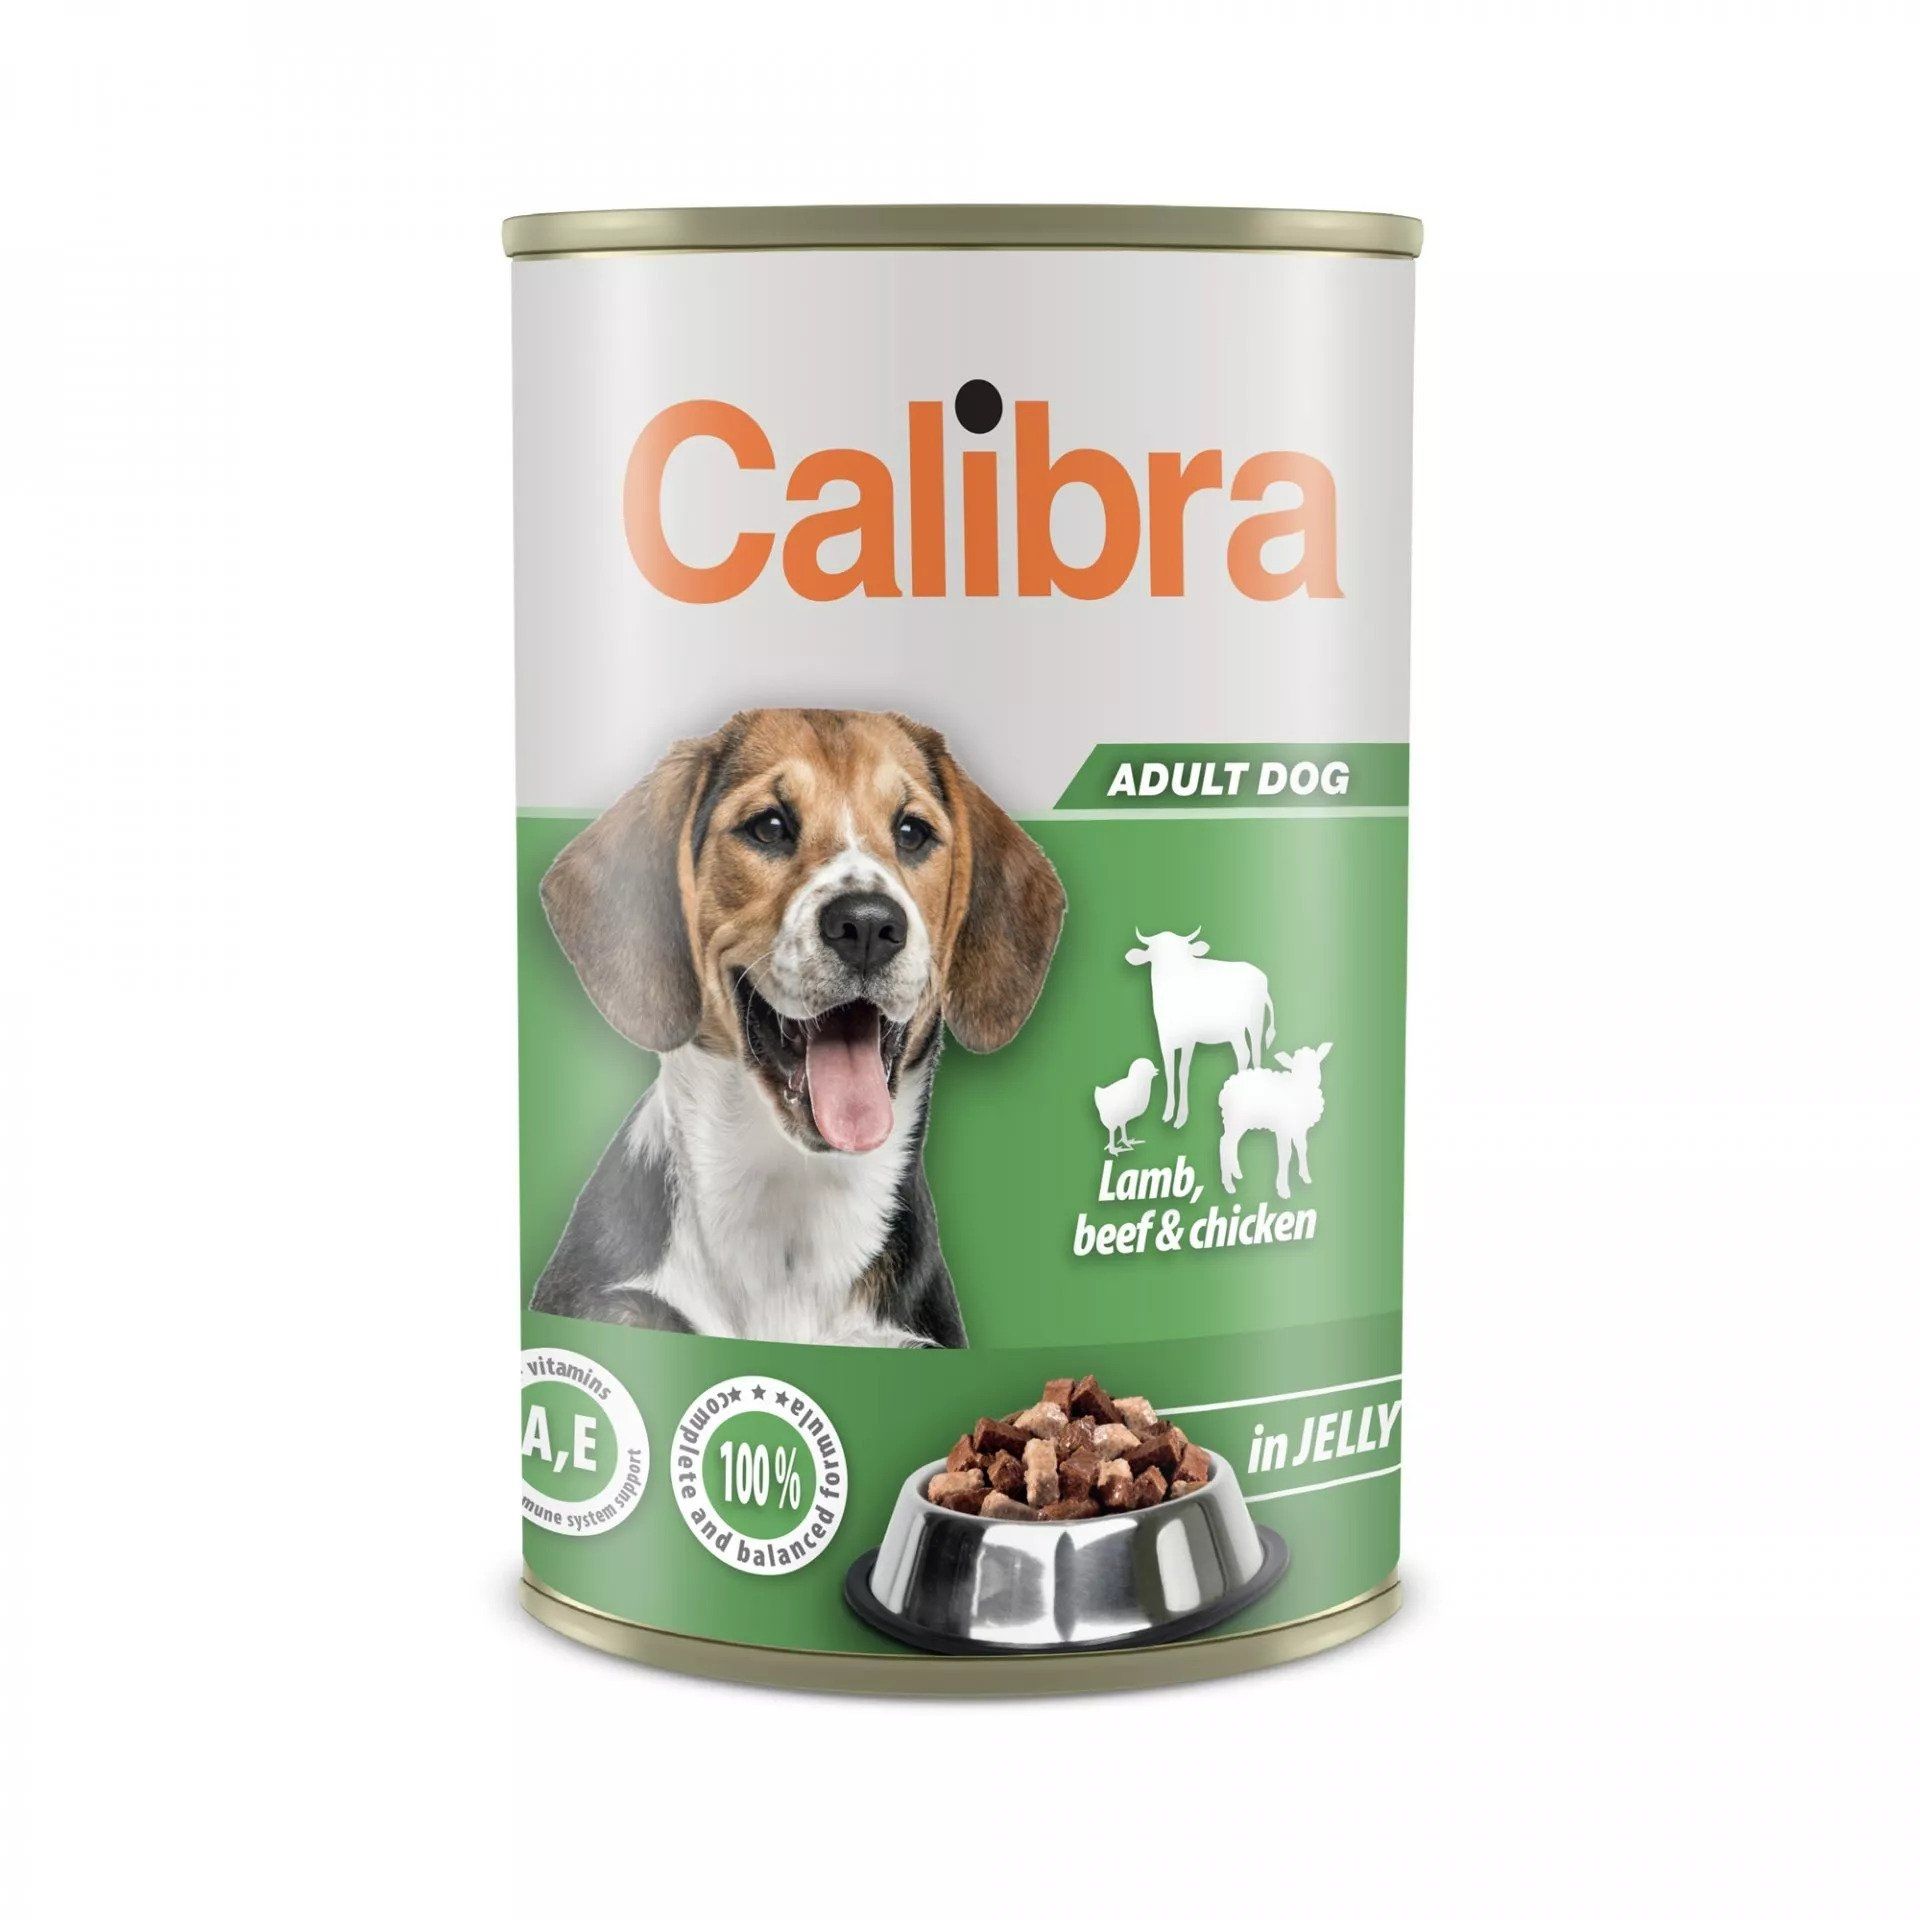 Calibra Dog Conserva Beef & Lamb & Chicken in Jelly 1240 g (conserva) imagine 2022